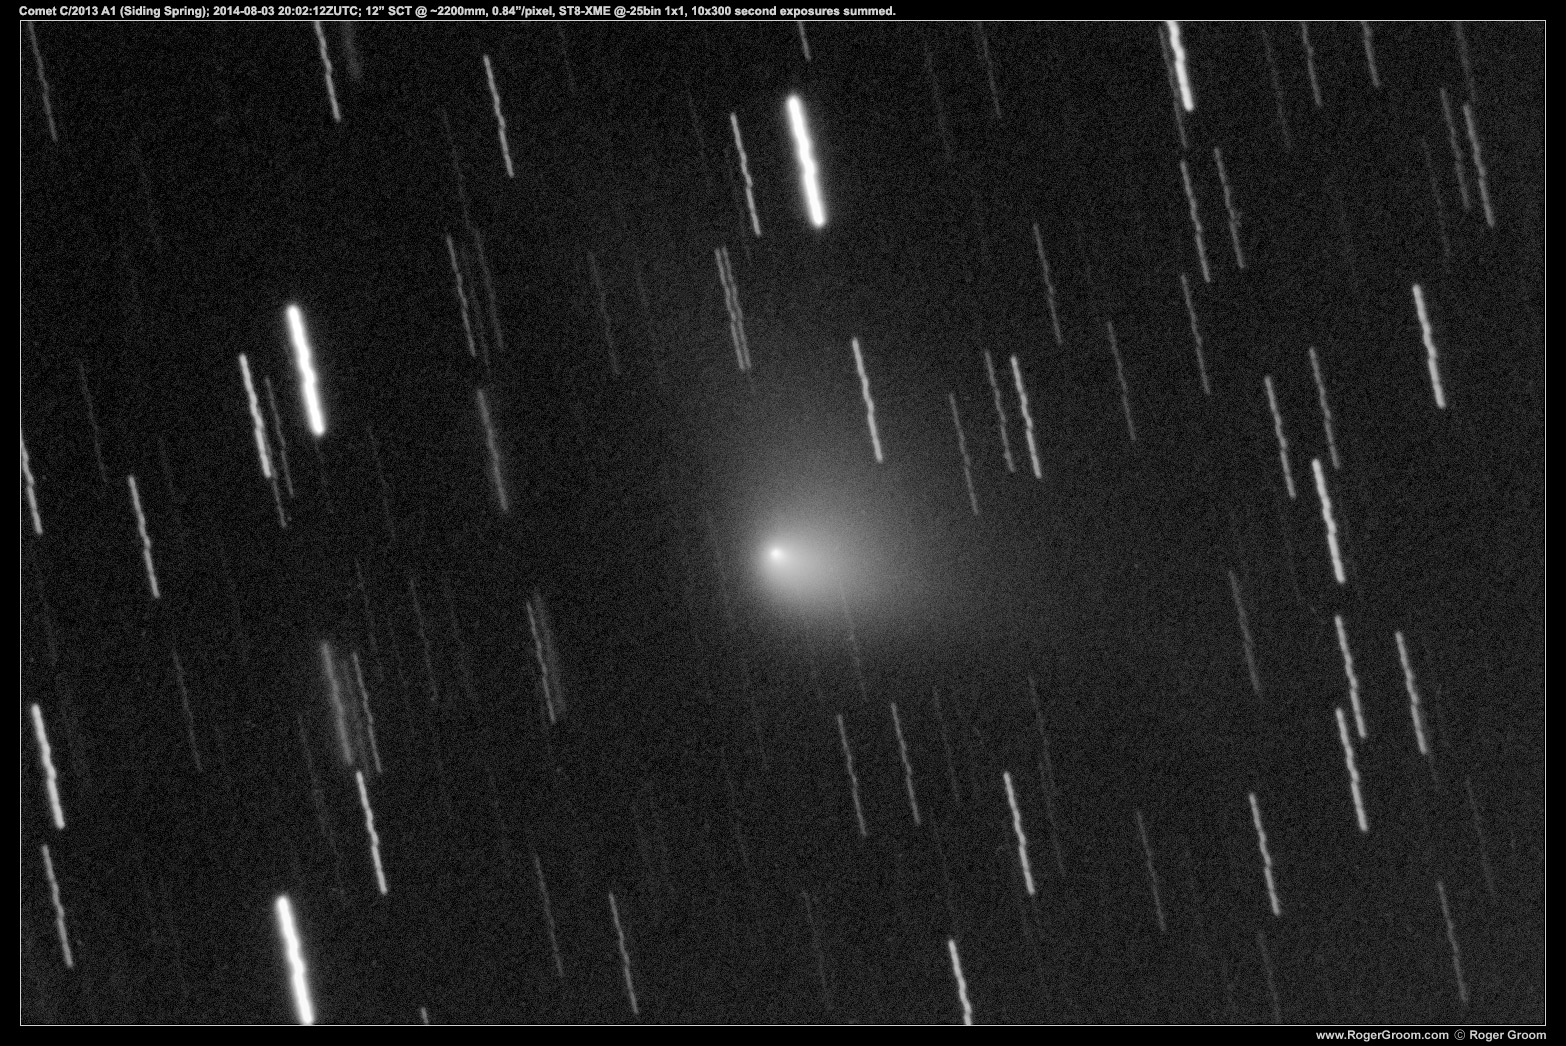 Comet C/2013 A1 (Siding Spring); 2014-08-03 20:02:12ZUTC; 12” SCT @ ~2200mm, 0.84”/pixel, ST8-XME @-25bin 1x1, 10x300 second exposures summed.